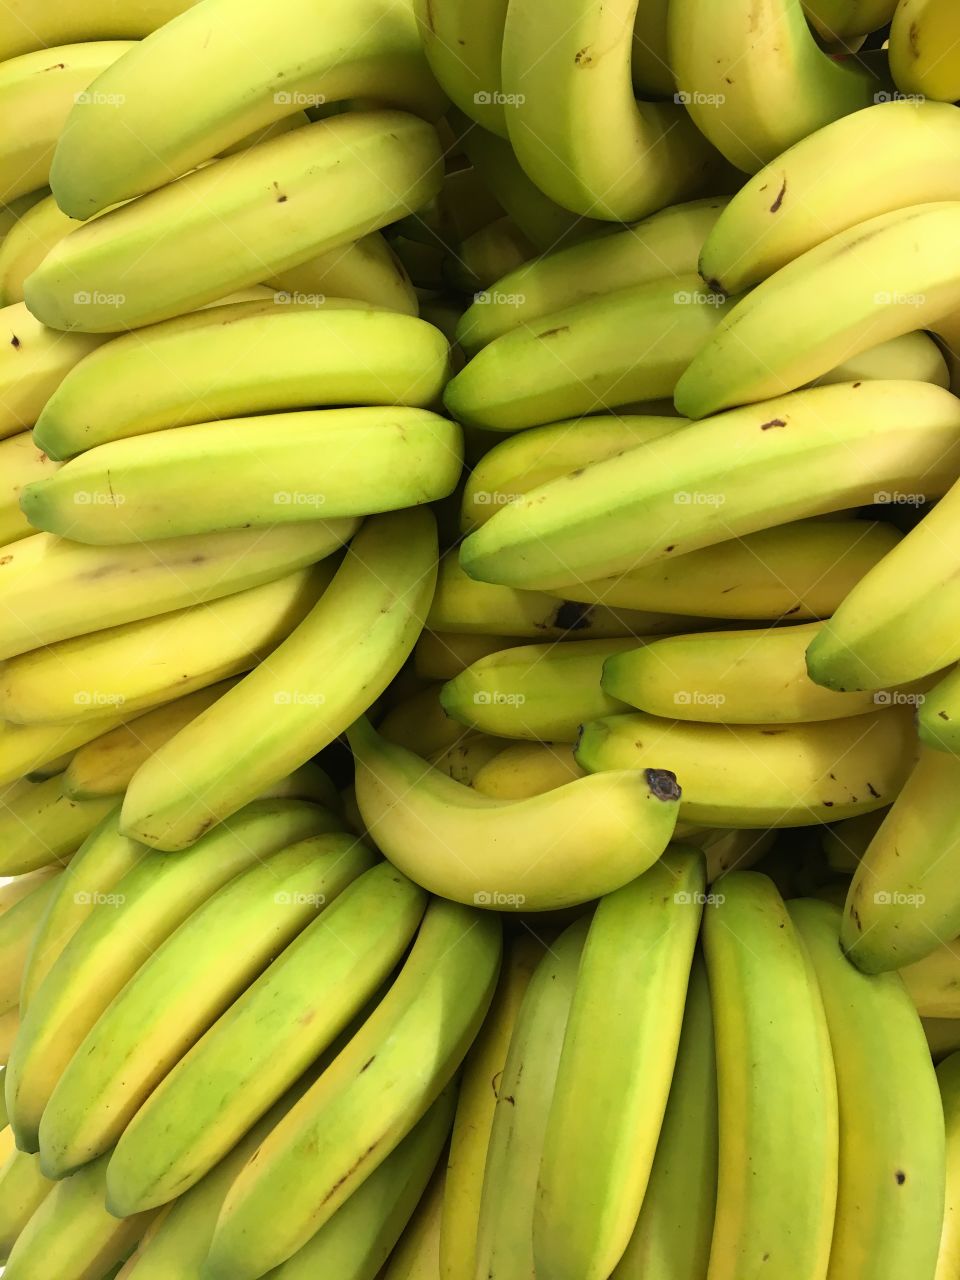 Banana from philipines 🍌